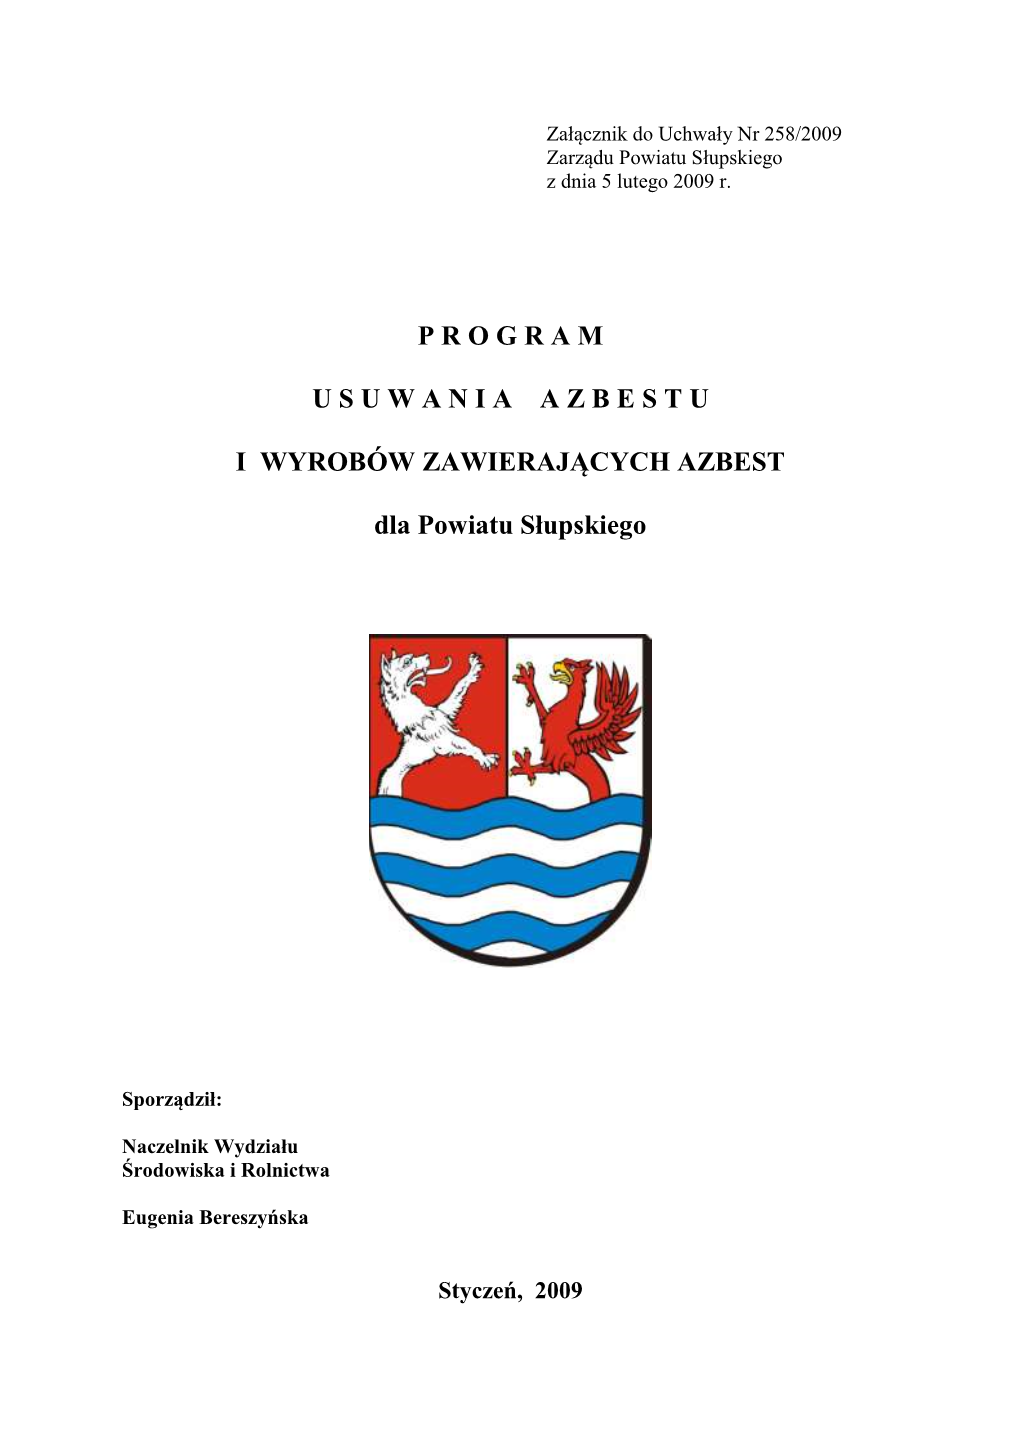 Program Usuwania Azbestu I Wyrobów Zawierających Azbest Stosowanych Na Terenie Polski” Obejmujący Lata 2003 – 2032